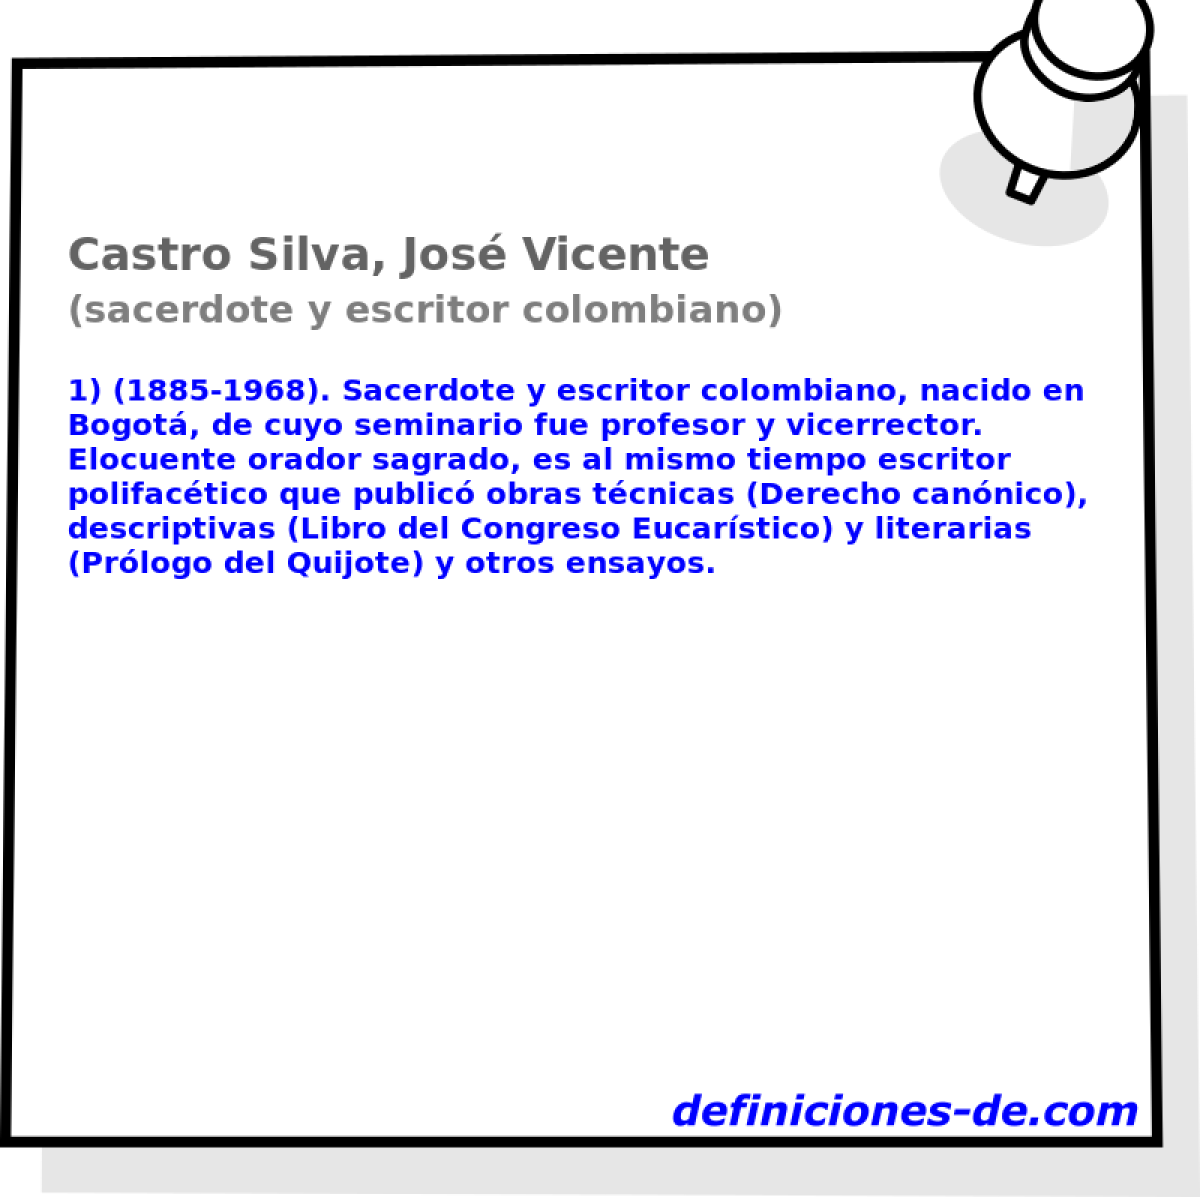 Castro Silva, Jos Vicente (sacerdote y escritor colombiano)